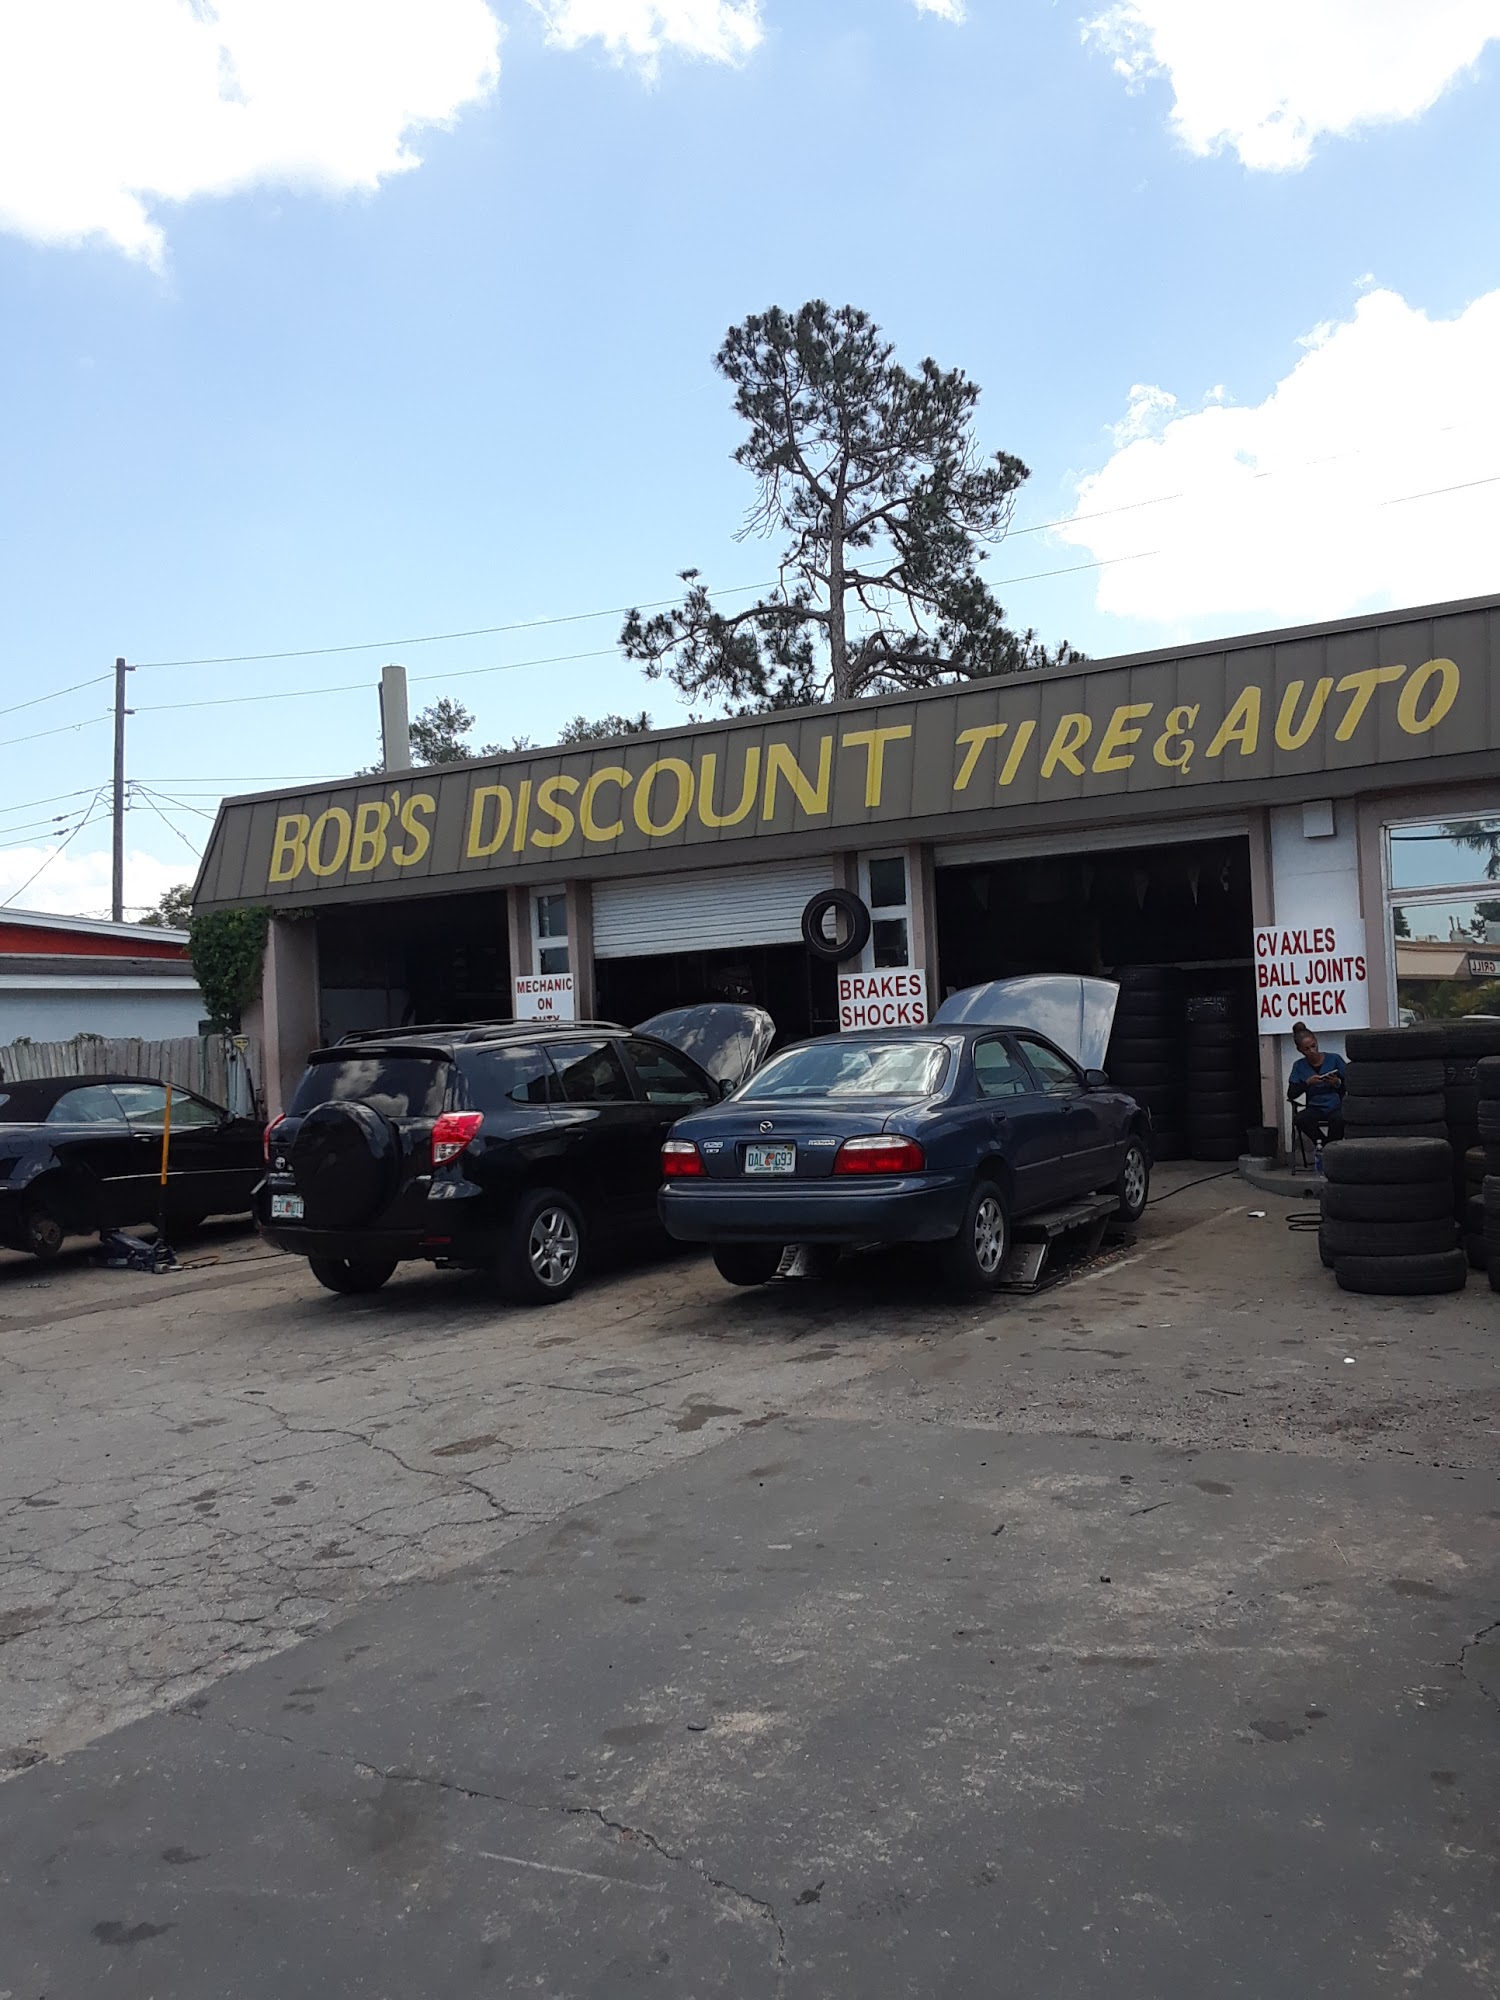 Bob's Discount Tire & Auto